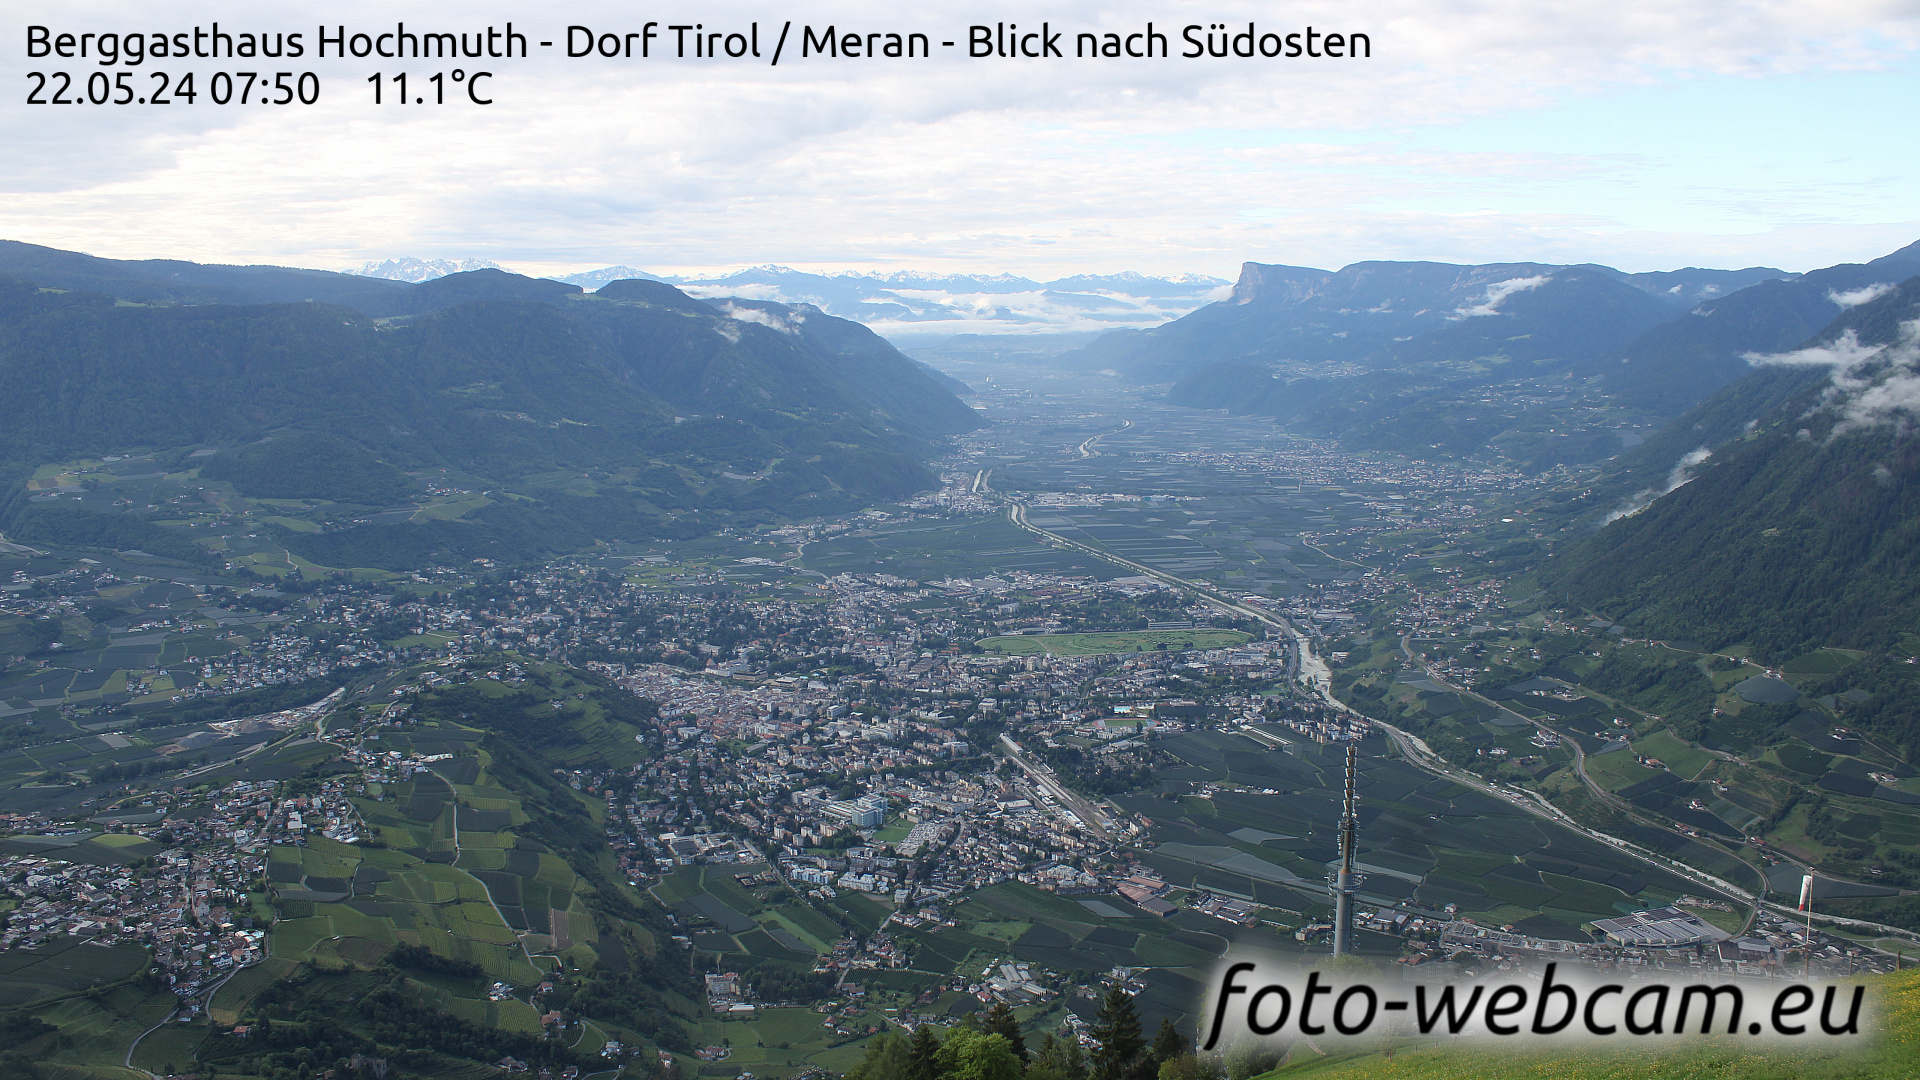 Dorf Tirol Di. 07:56